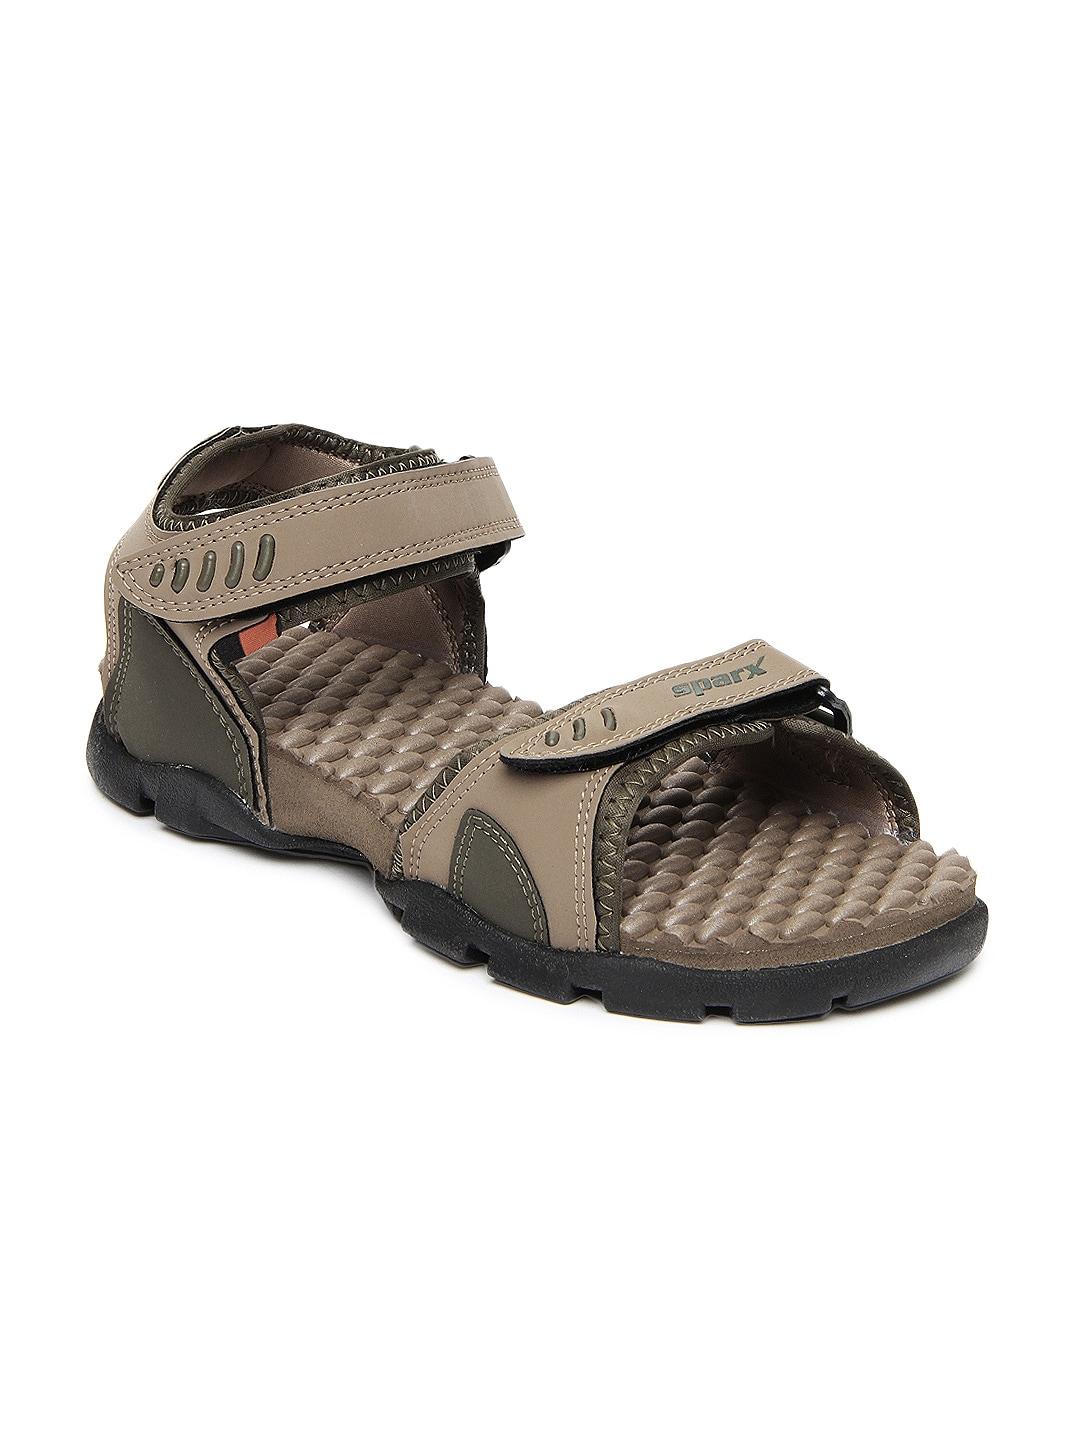 sparx-men-brown-sports-sandals